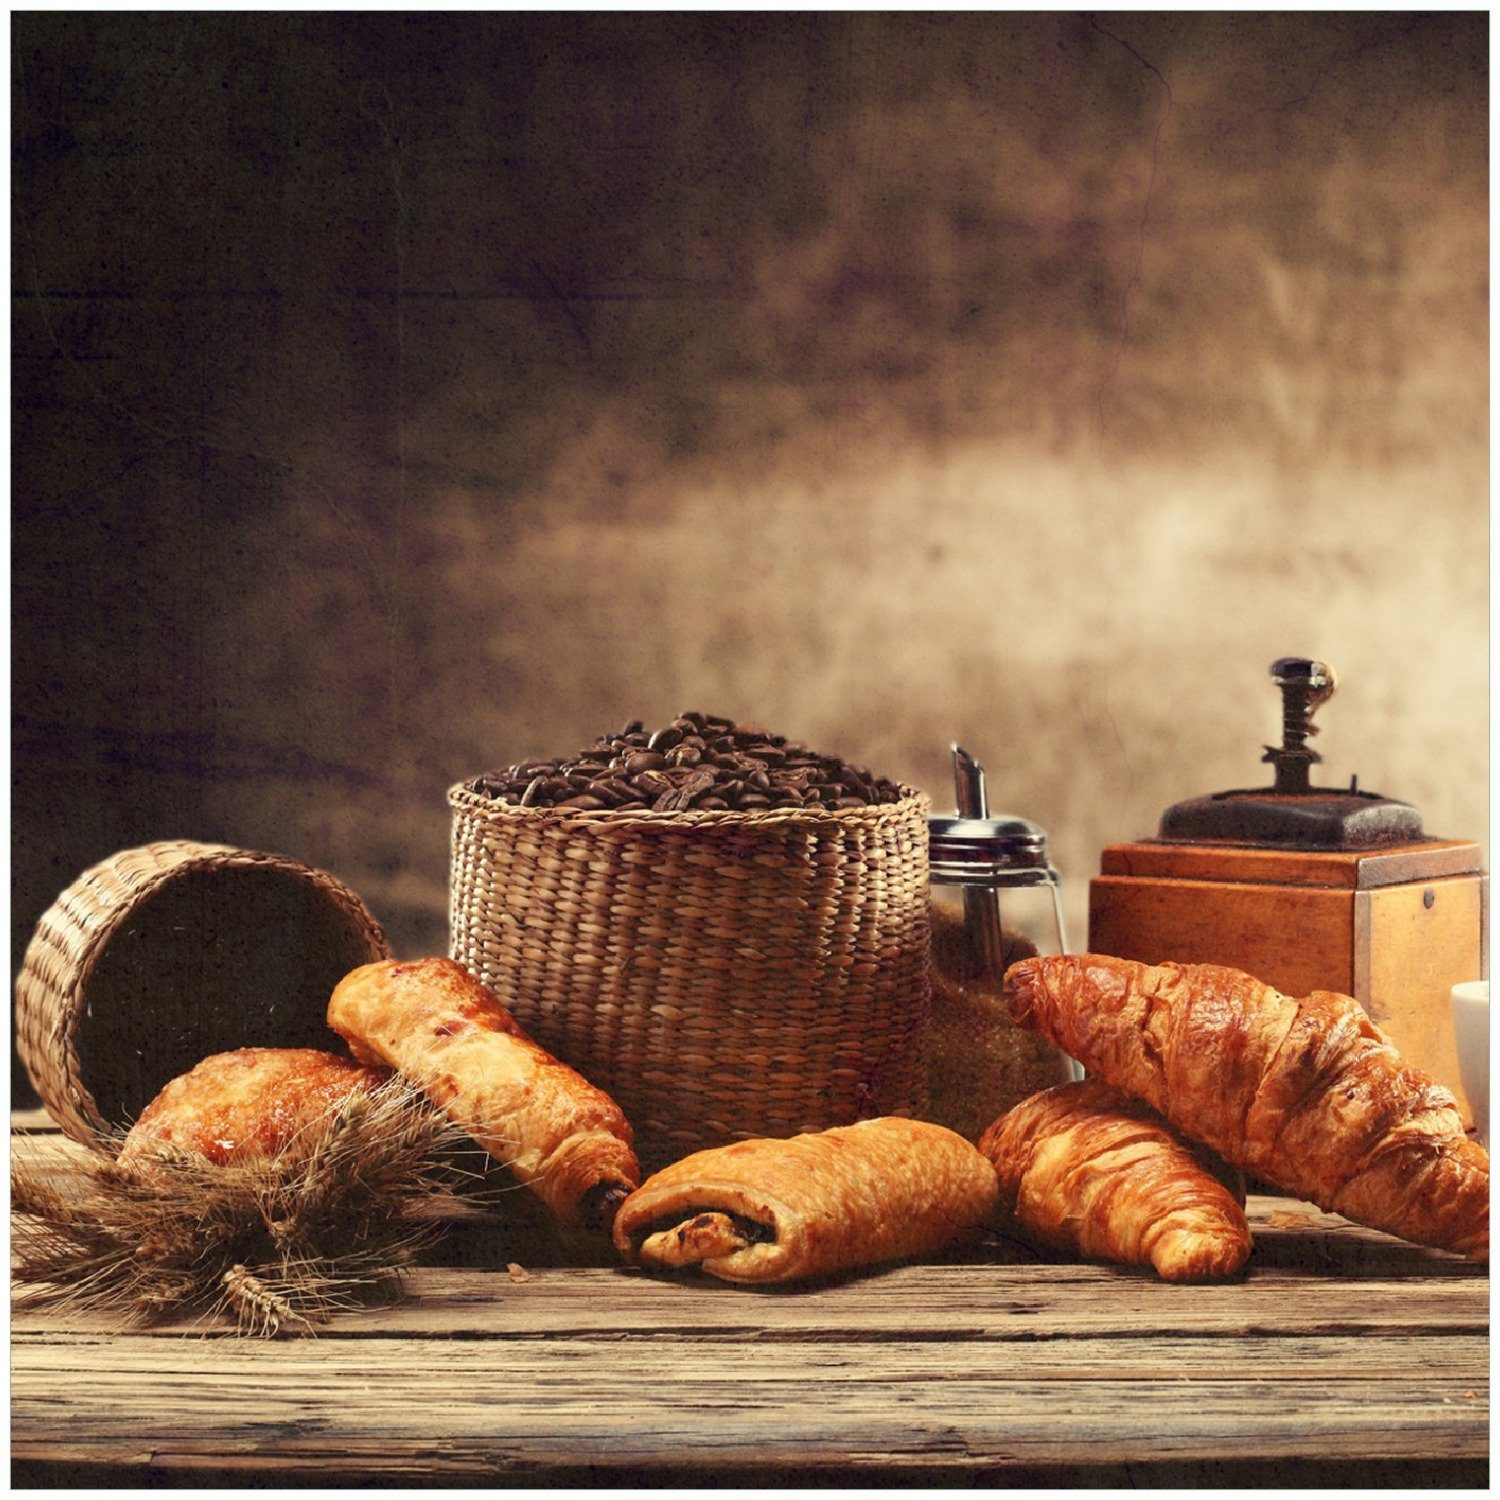 Französisches Café mit Wallario Frühstück Memoboard und Croissants